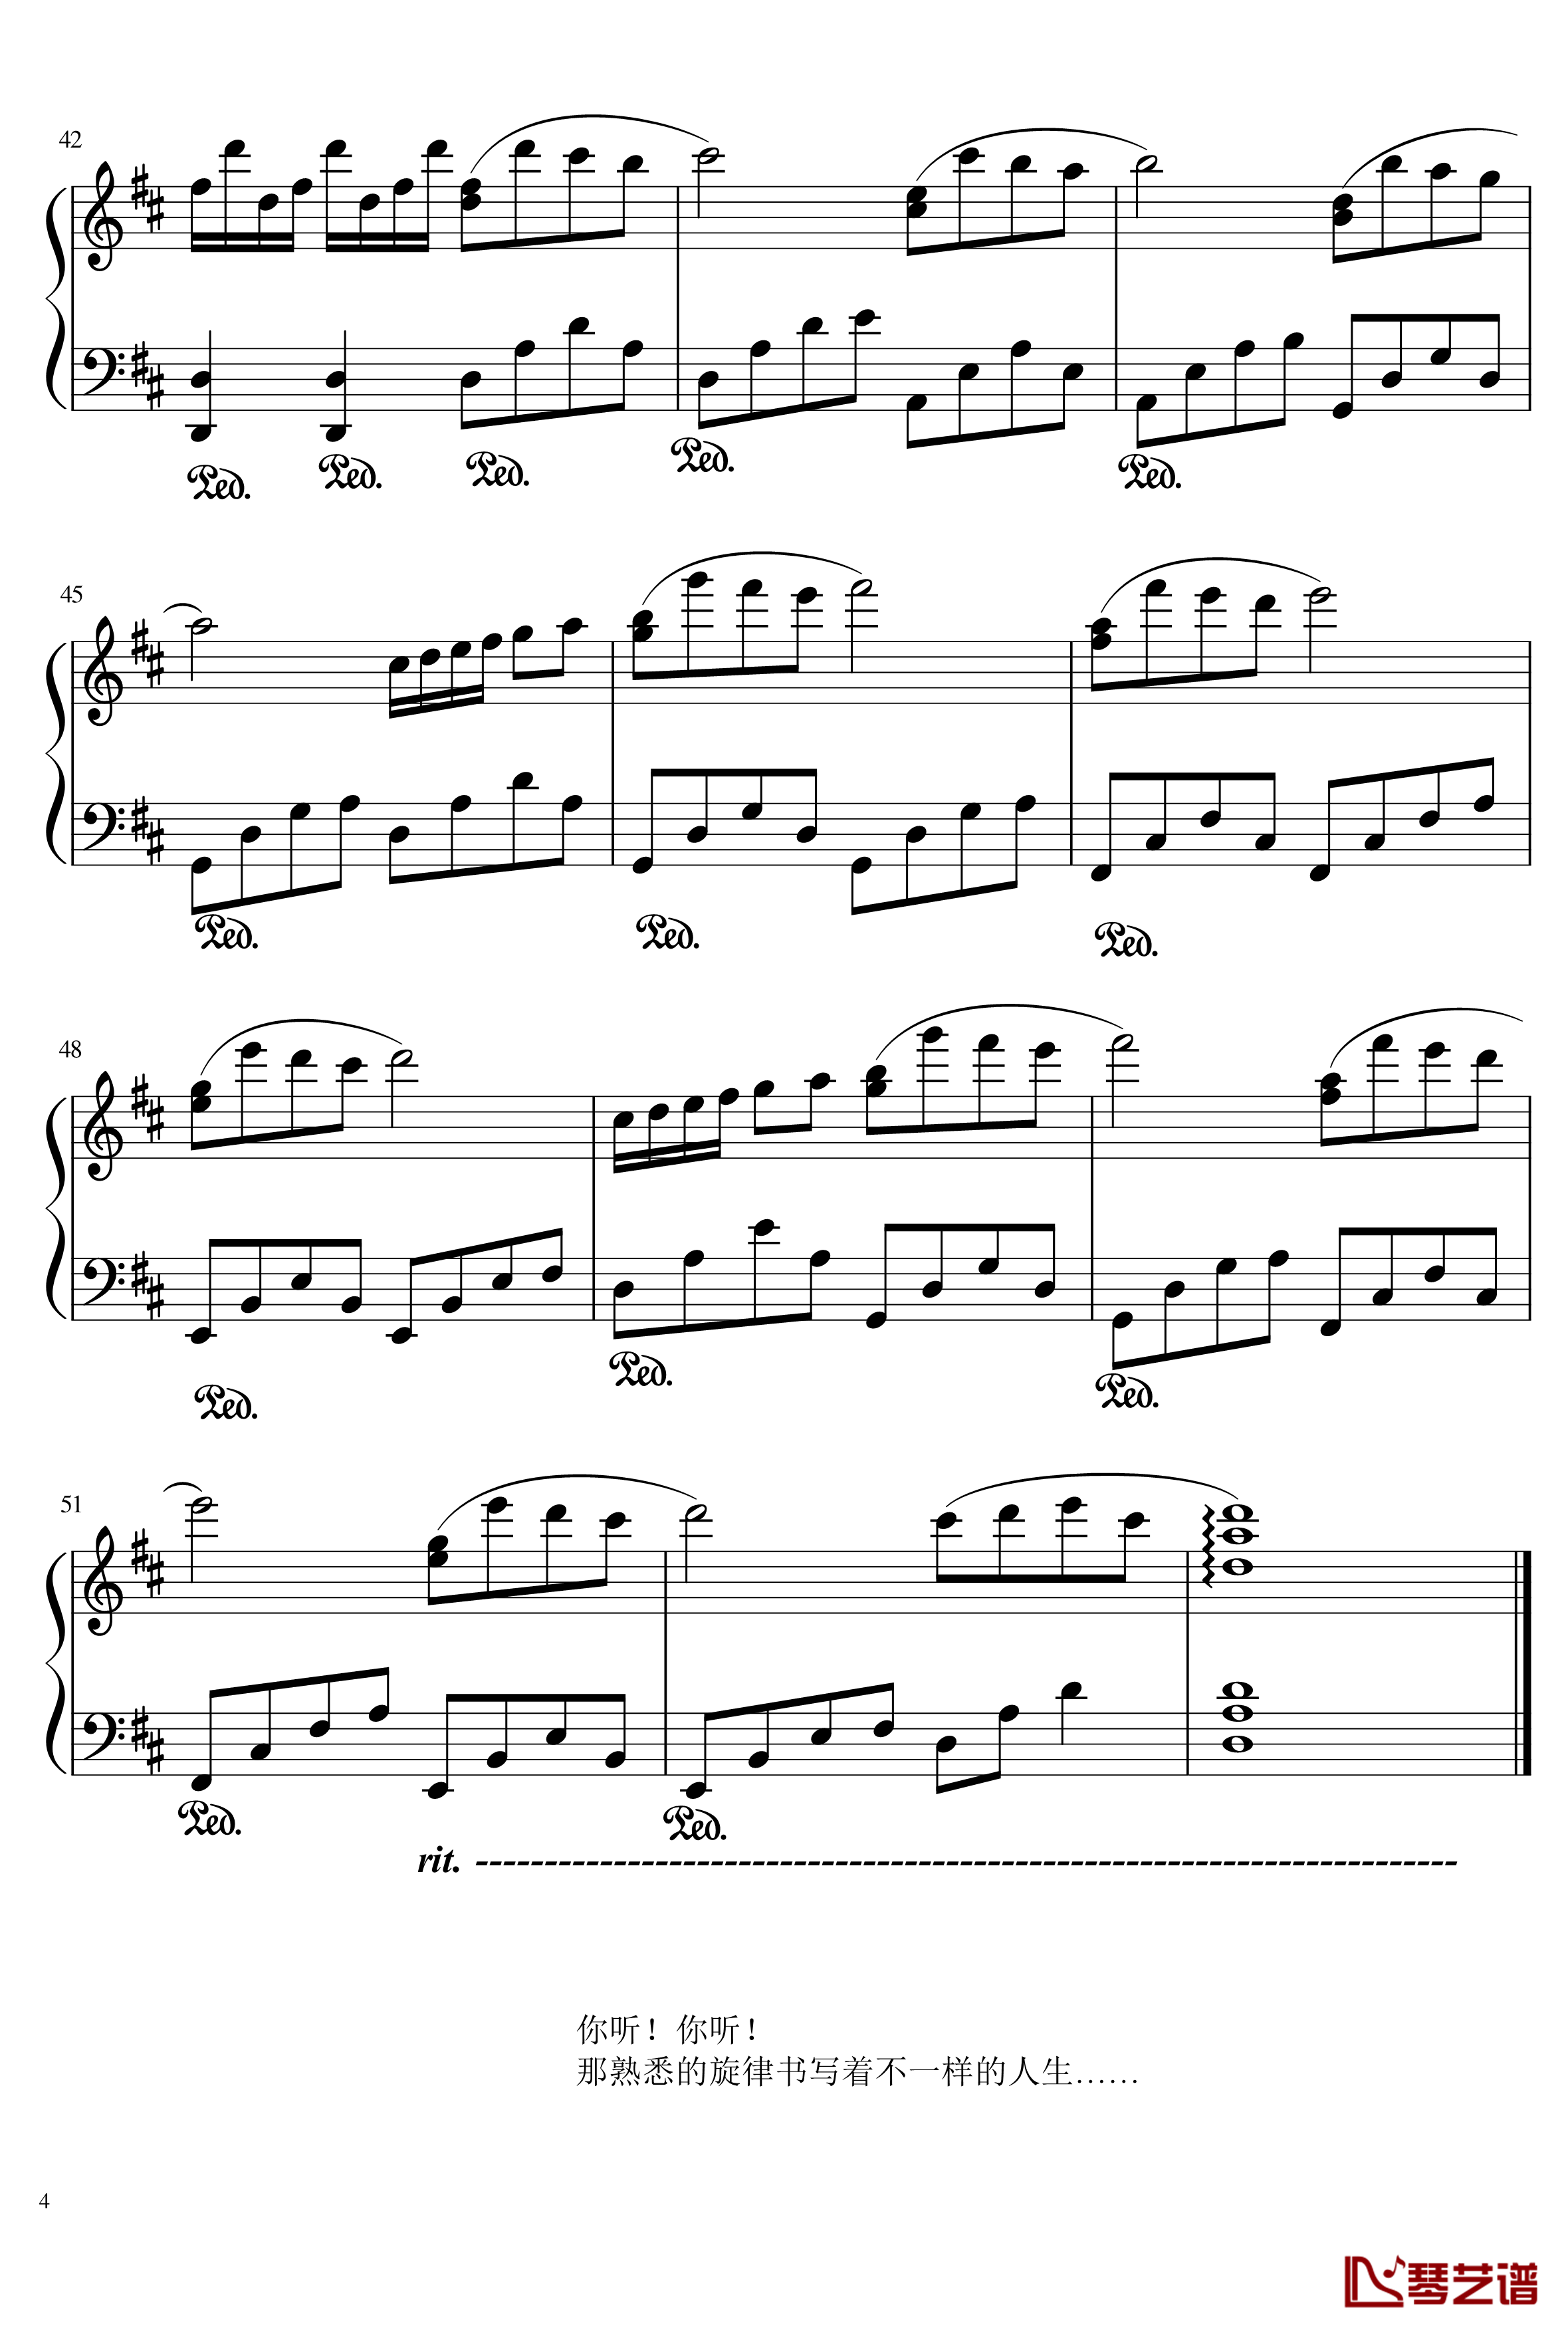 林妙可的旋律钢琴谱-156516370864